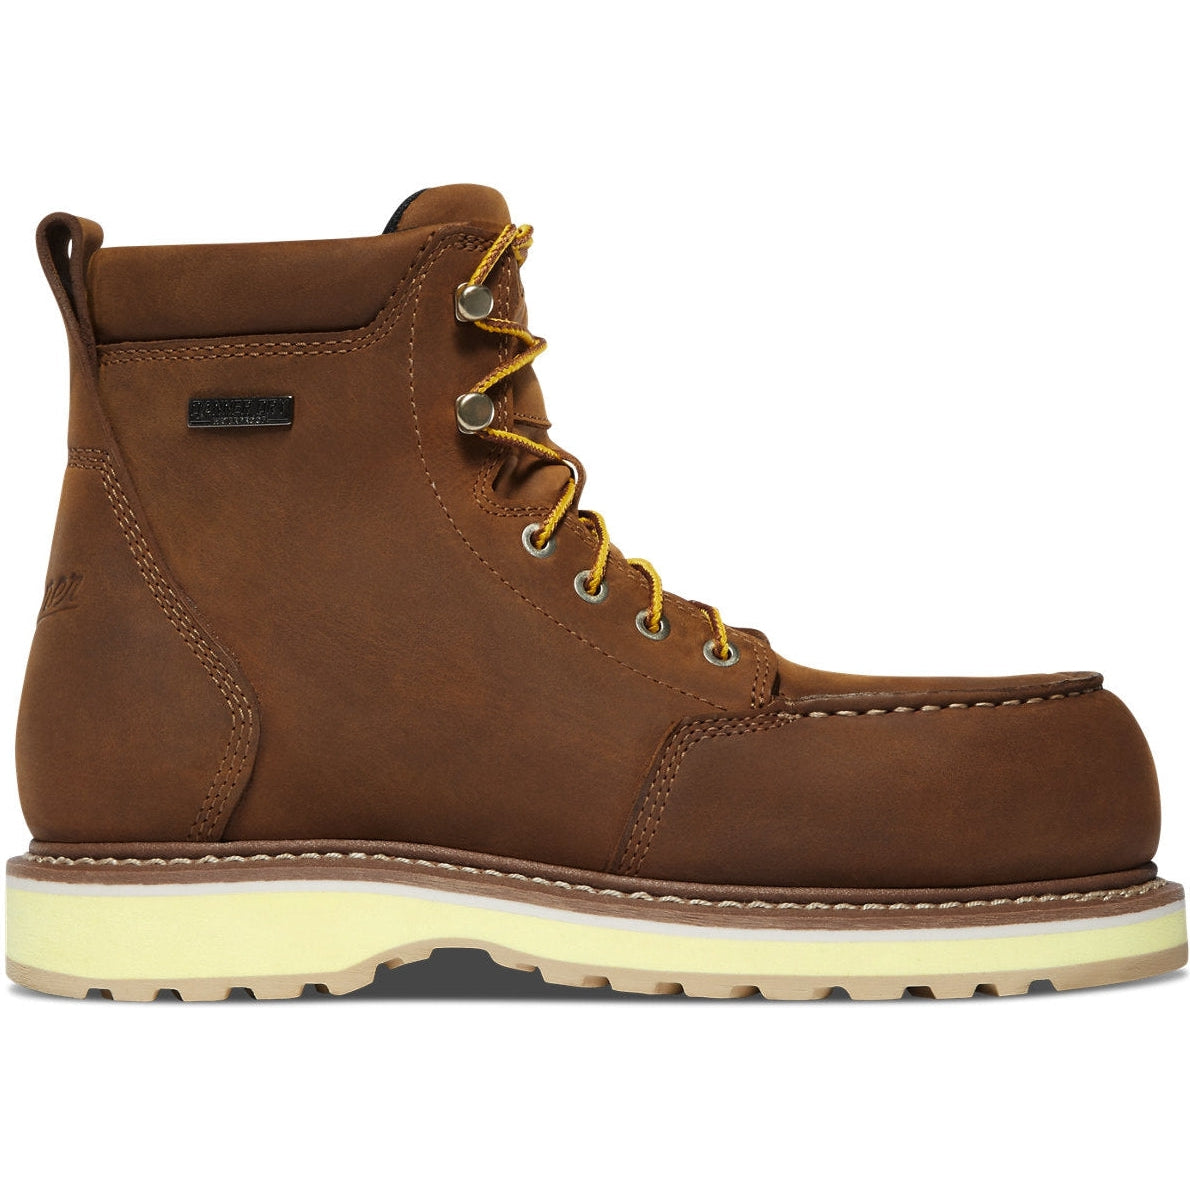 Danner Women's Cedar River 6" Aluminum Toe WP Work Boot -Brown- 14308 5 / Medium / Brown - Overlook Boots